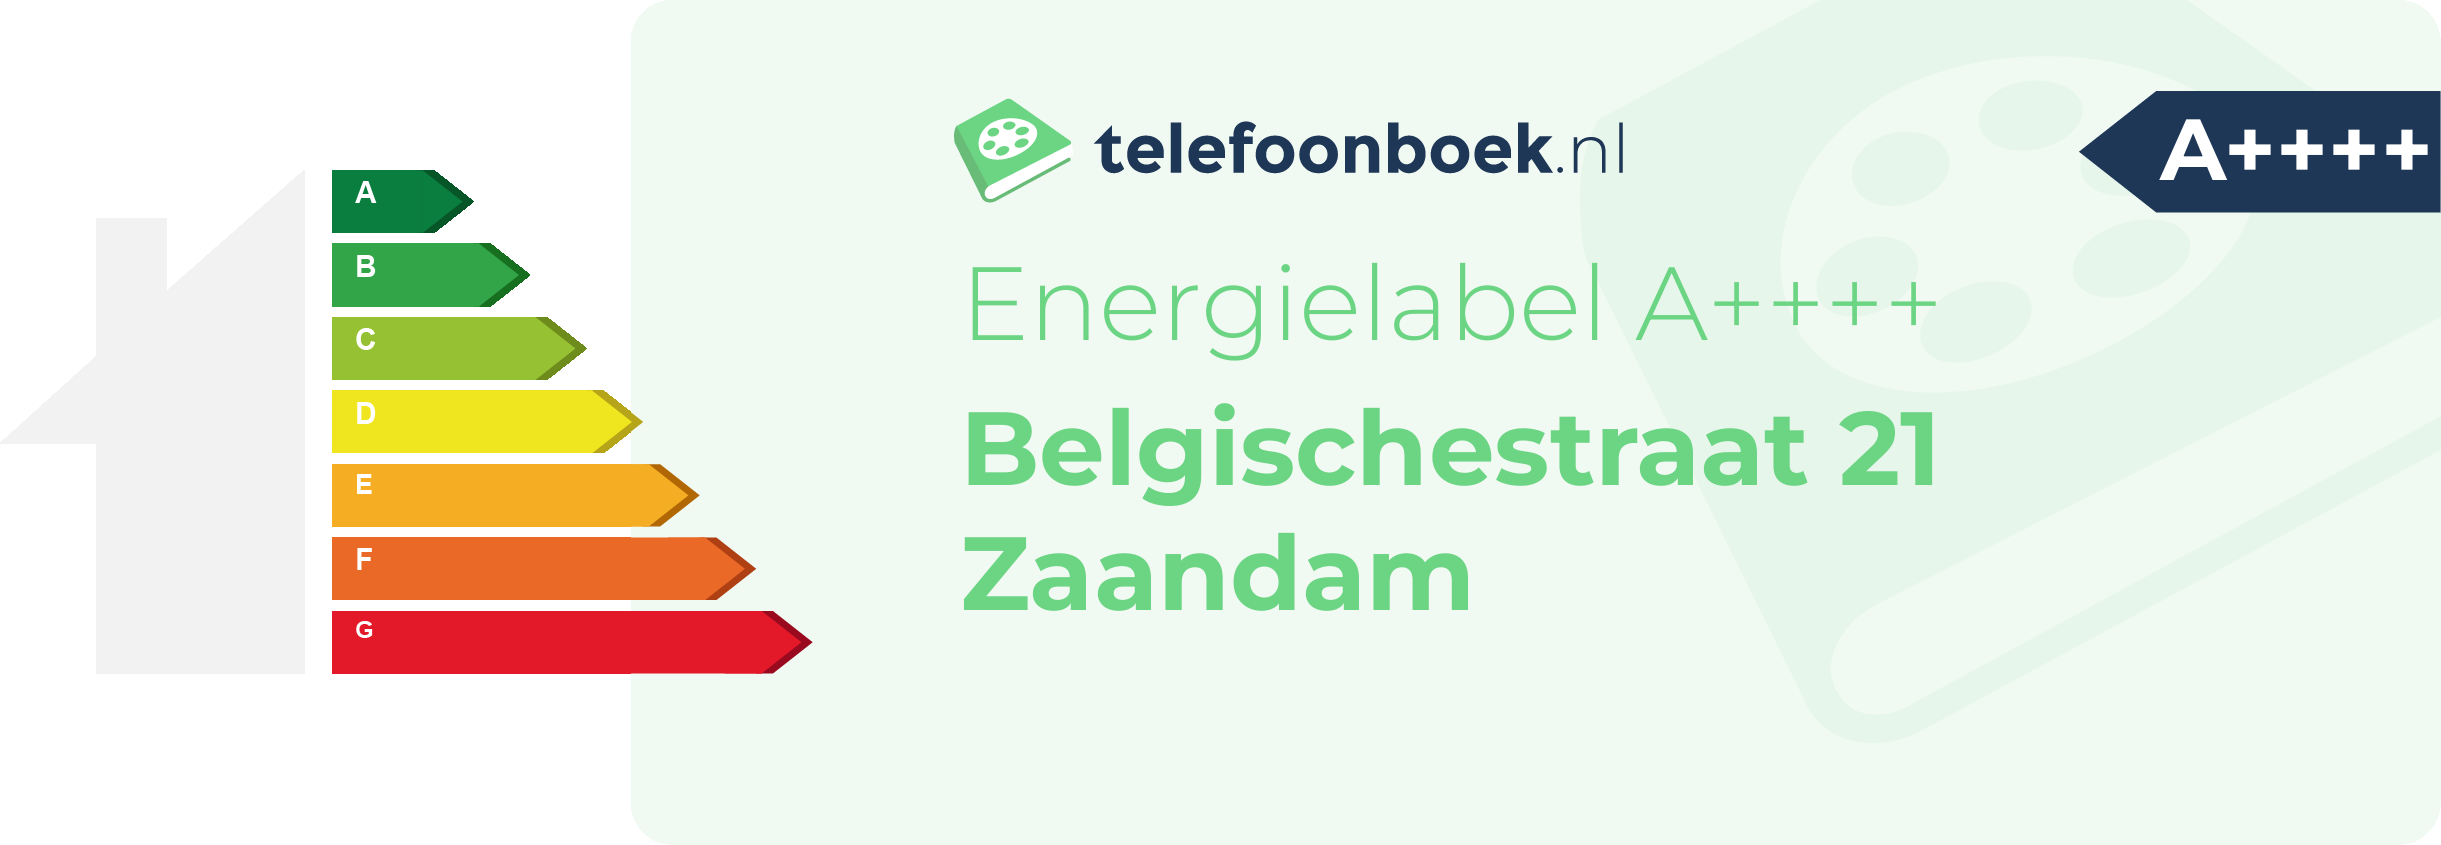 Energielabel Belgischestraat 21 Zaandam